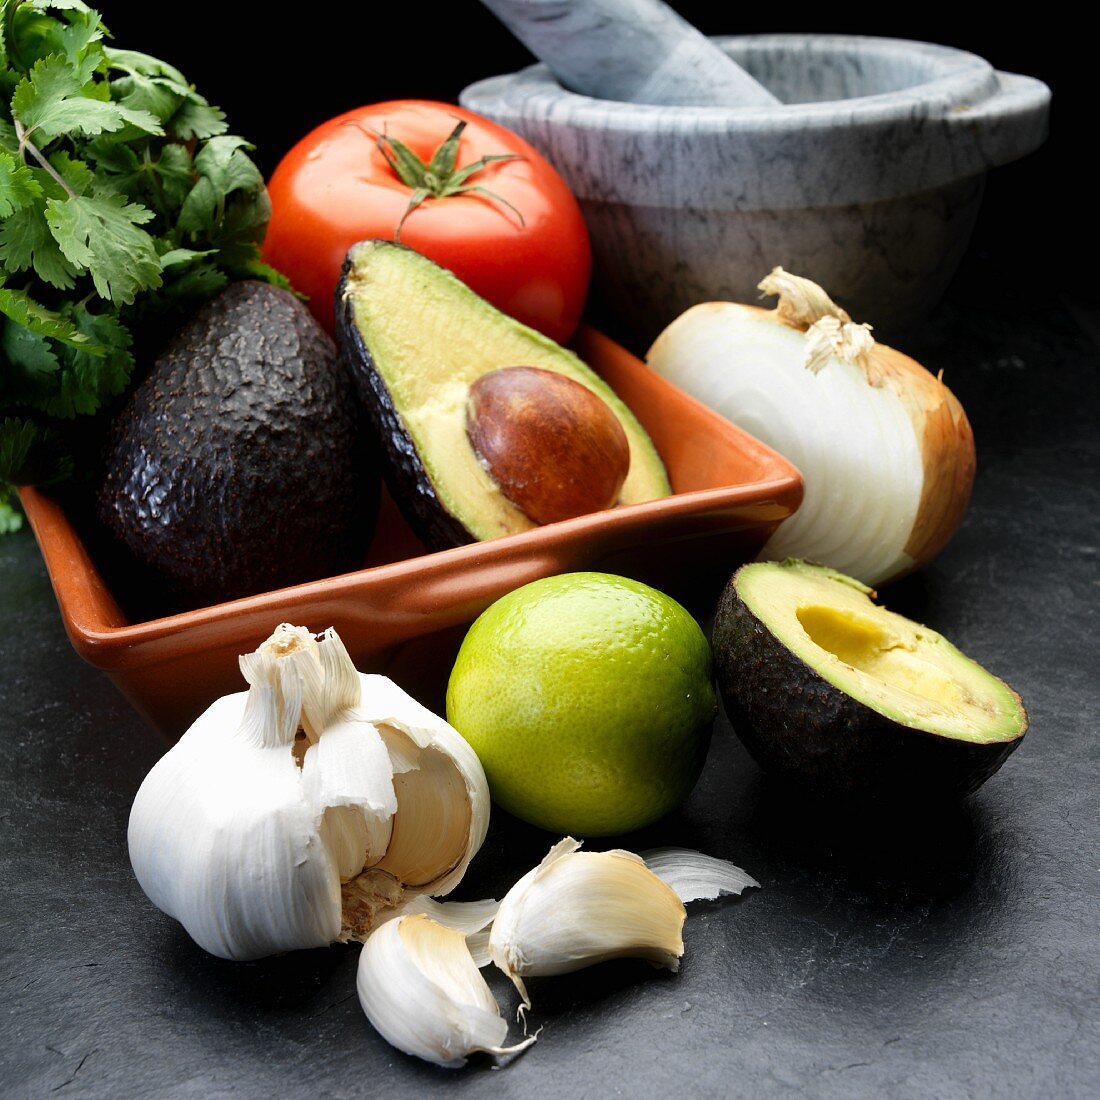 Zutaten für Guacamole: Avocado, Zwiebeln, Tomaten, Knoblauch, Koriander